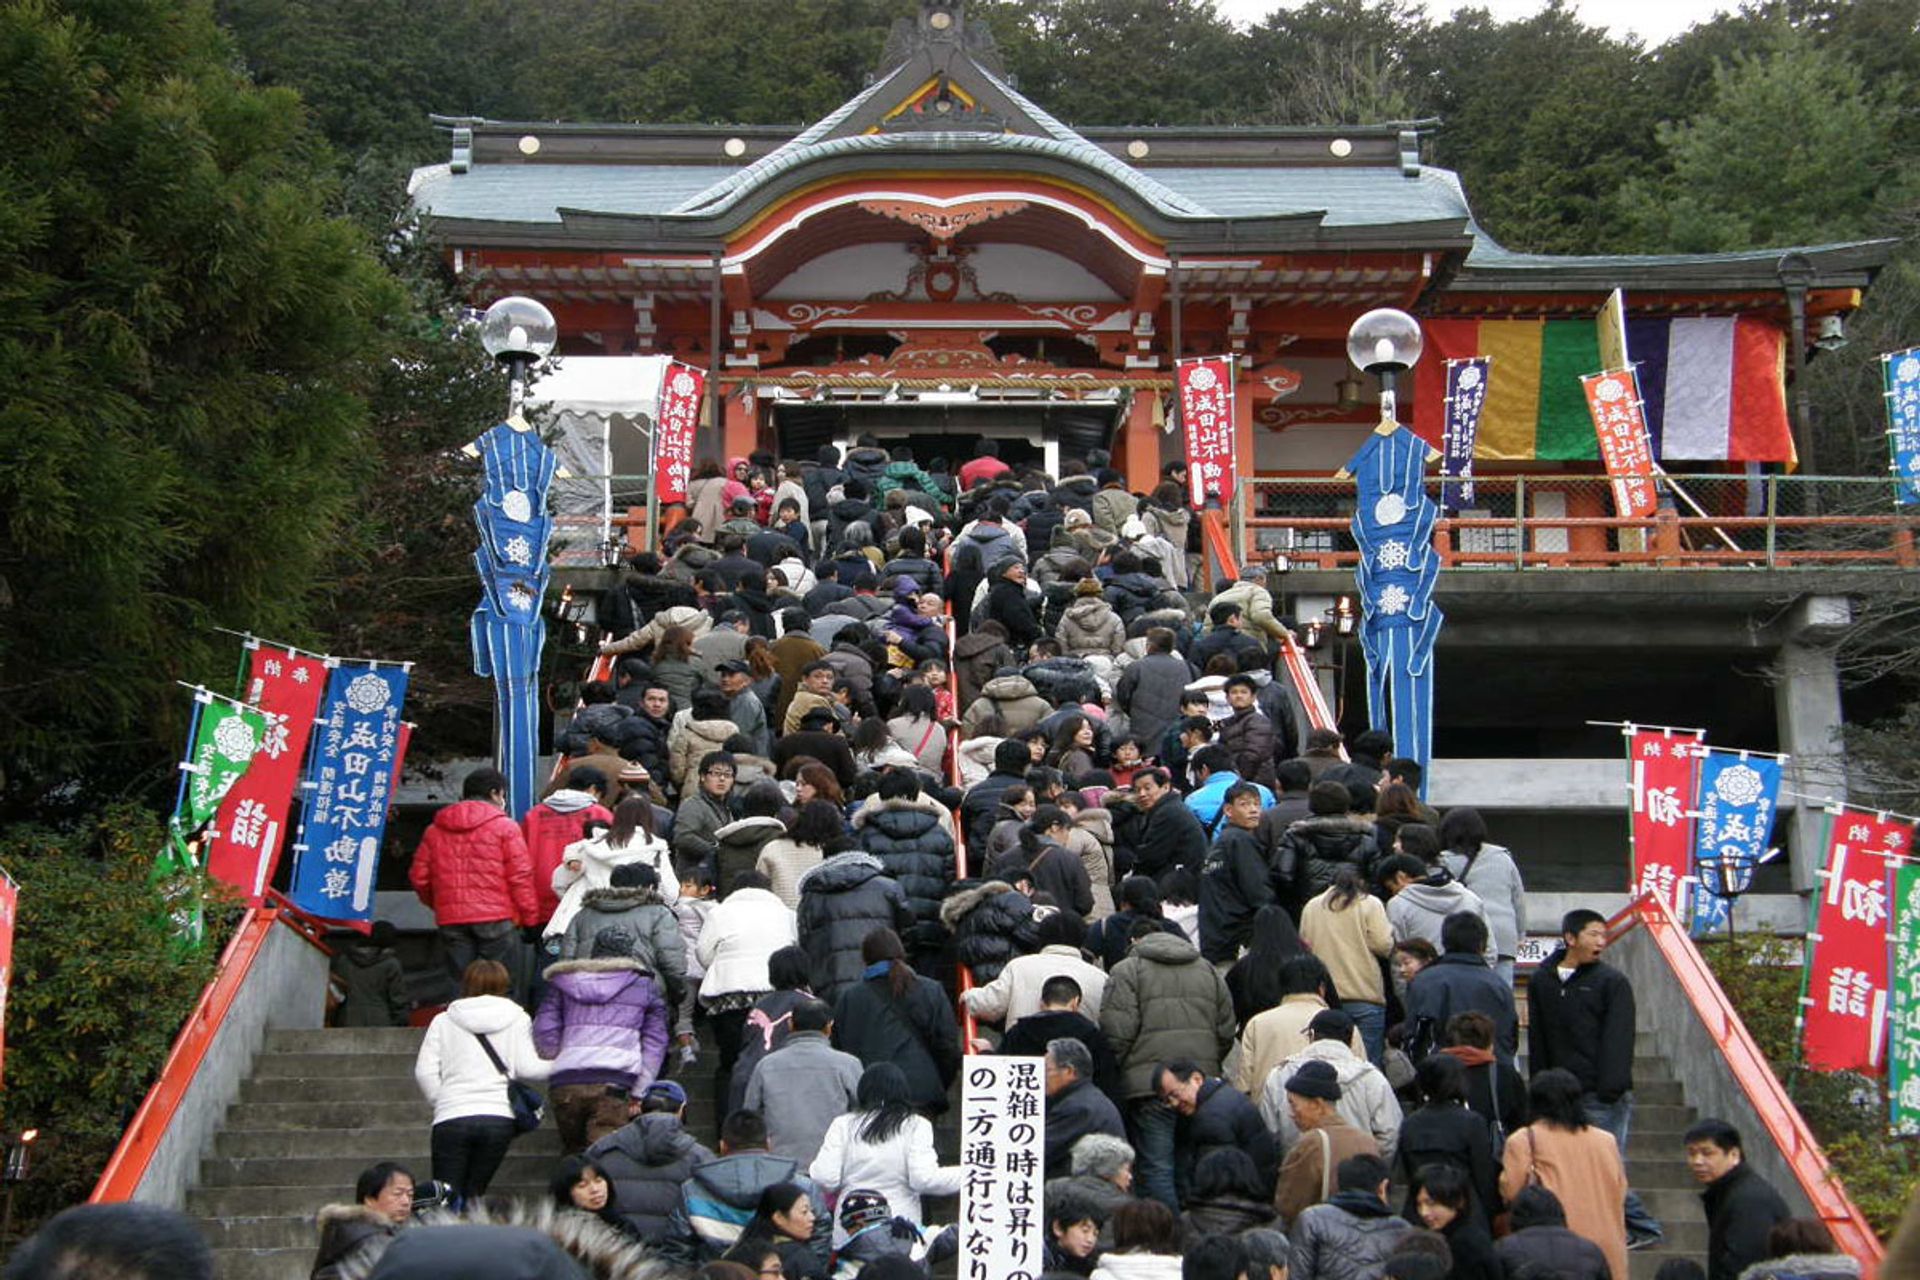 Viếng thăm đền thờ đầu năm - Hatsumode (初 詣)